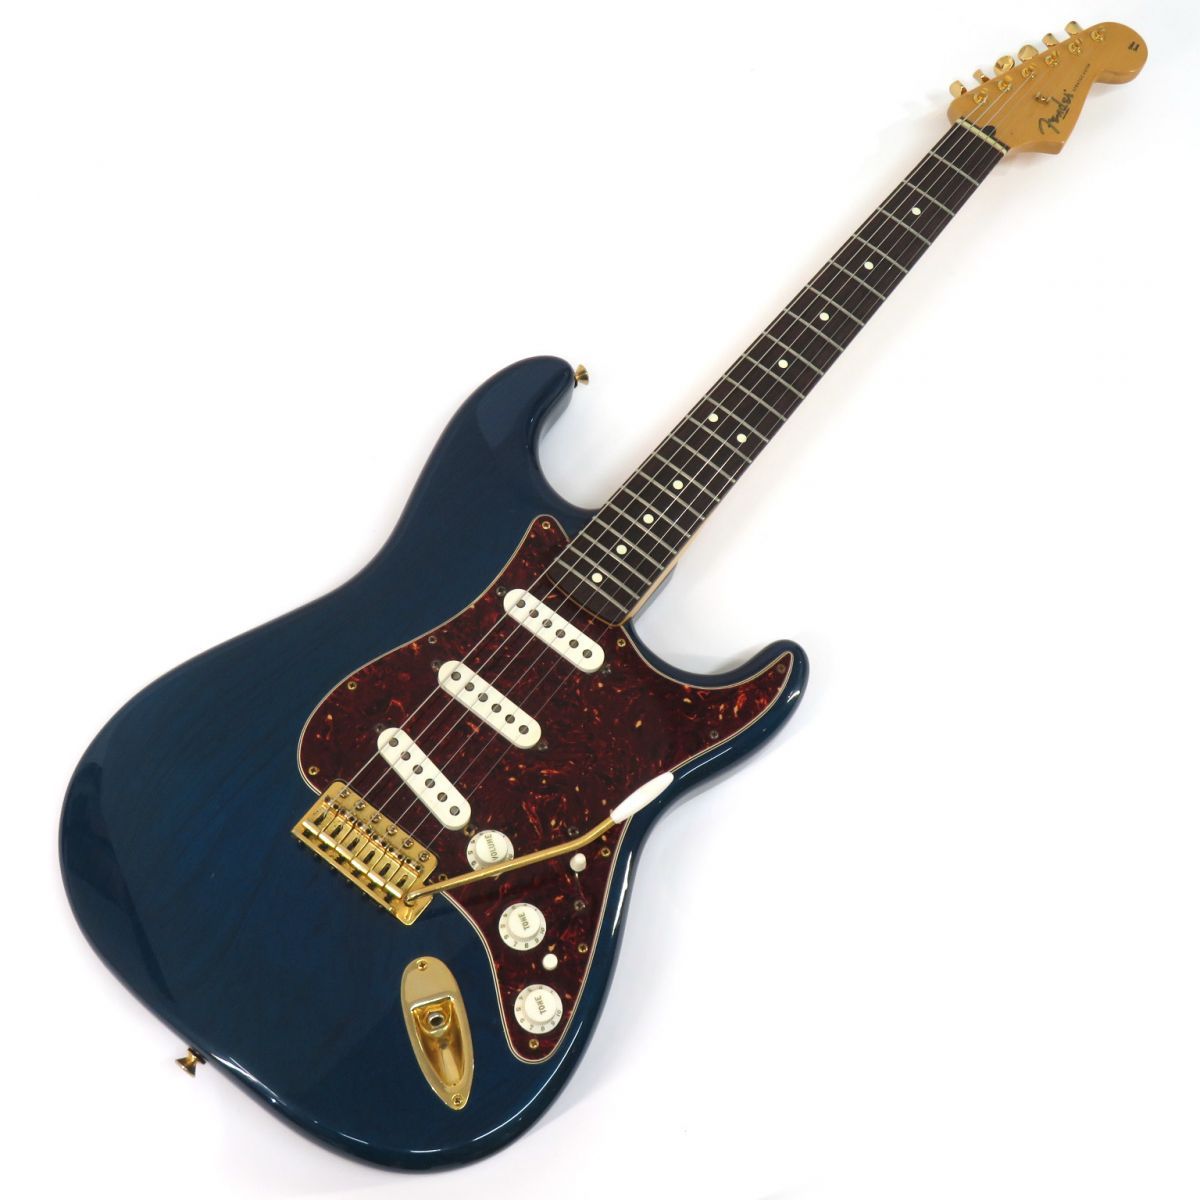 Fender Mexico フェンダーメキシコ Deluxe Player Stratocaster シースルーブルー ストラトキャスター エレキギター  ※中古 - メルカリ